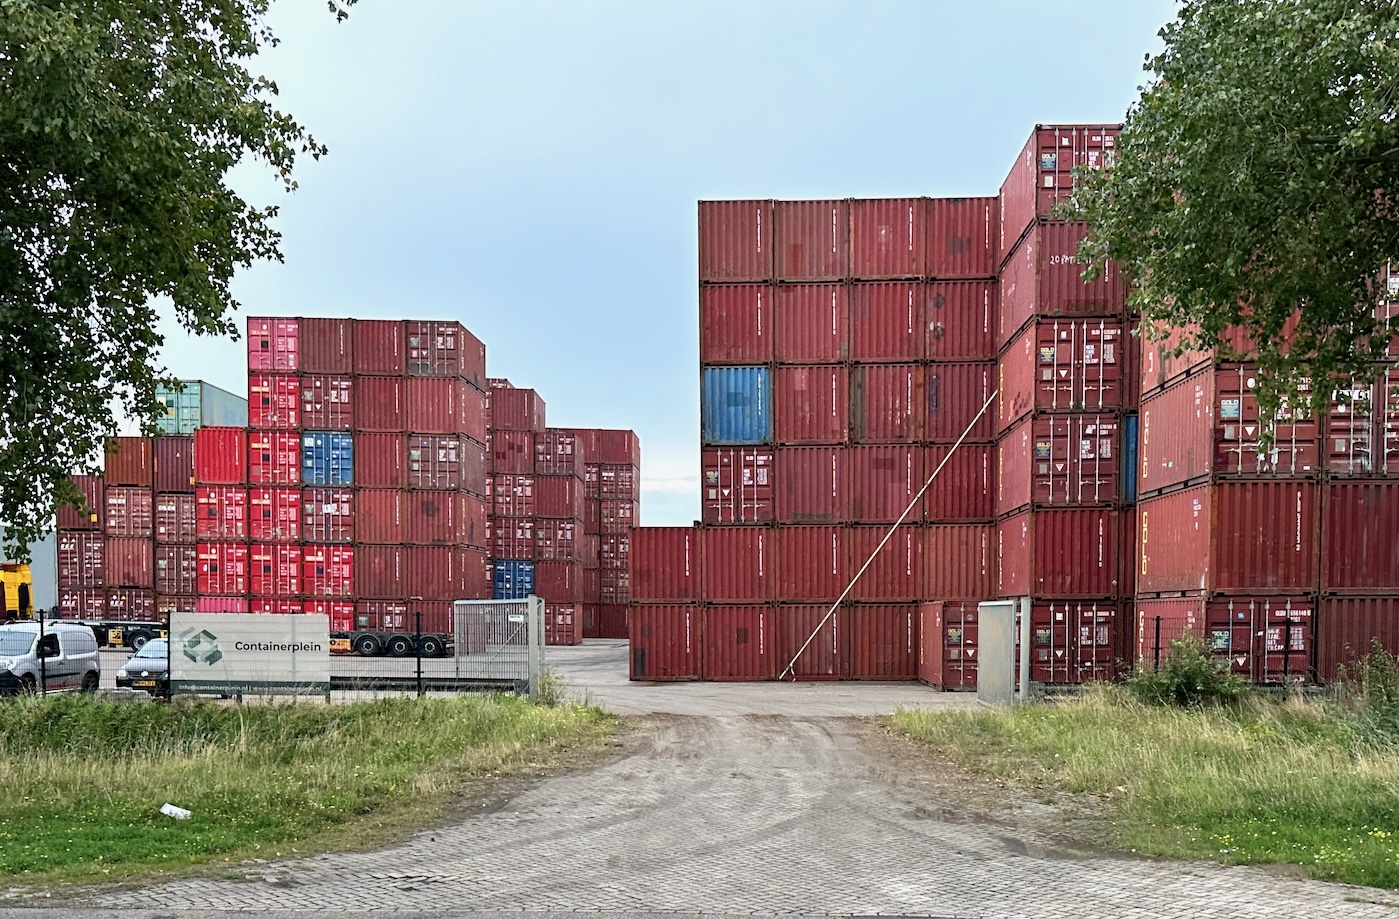 Containerplein Empty Depot Moerdijk 2